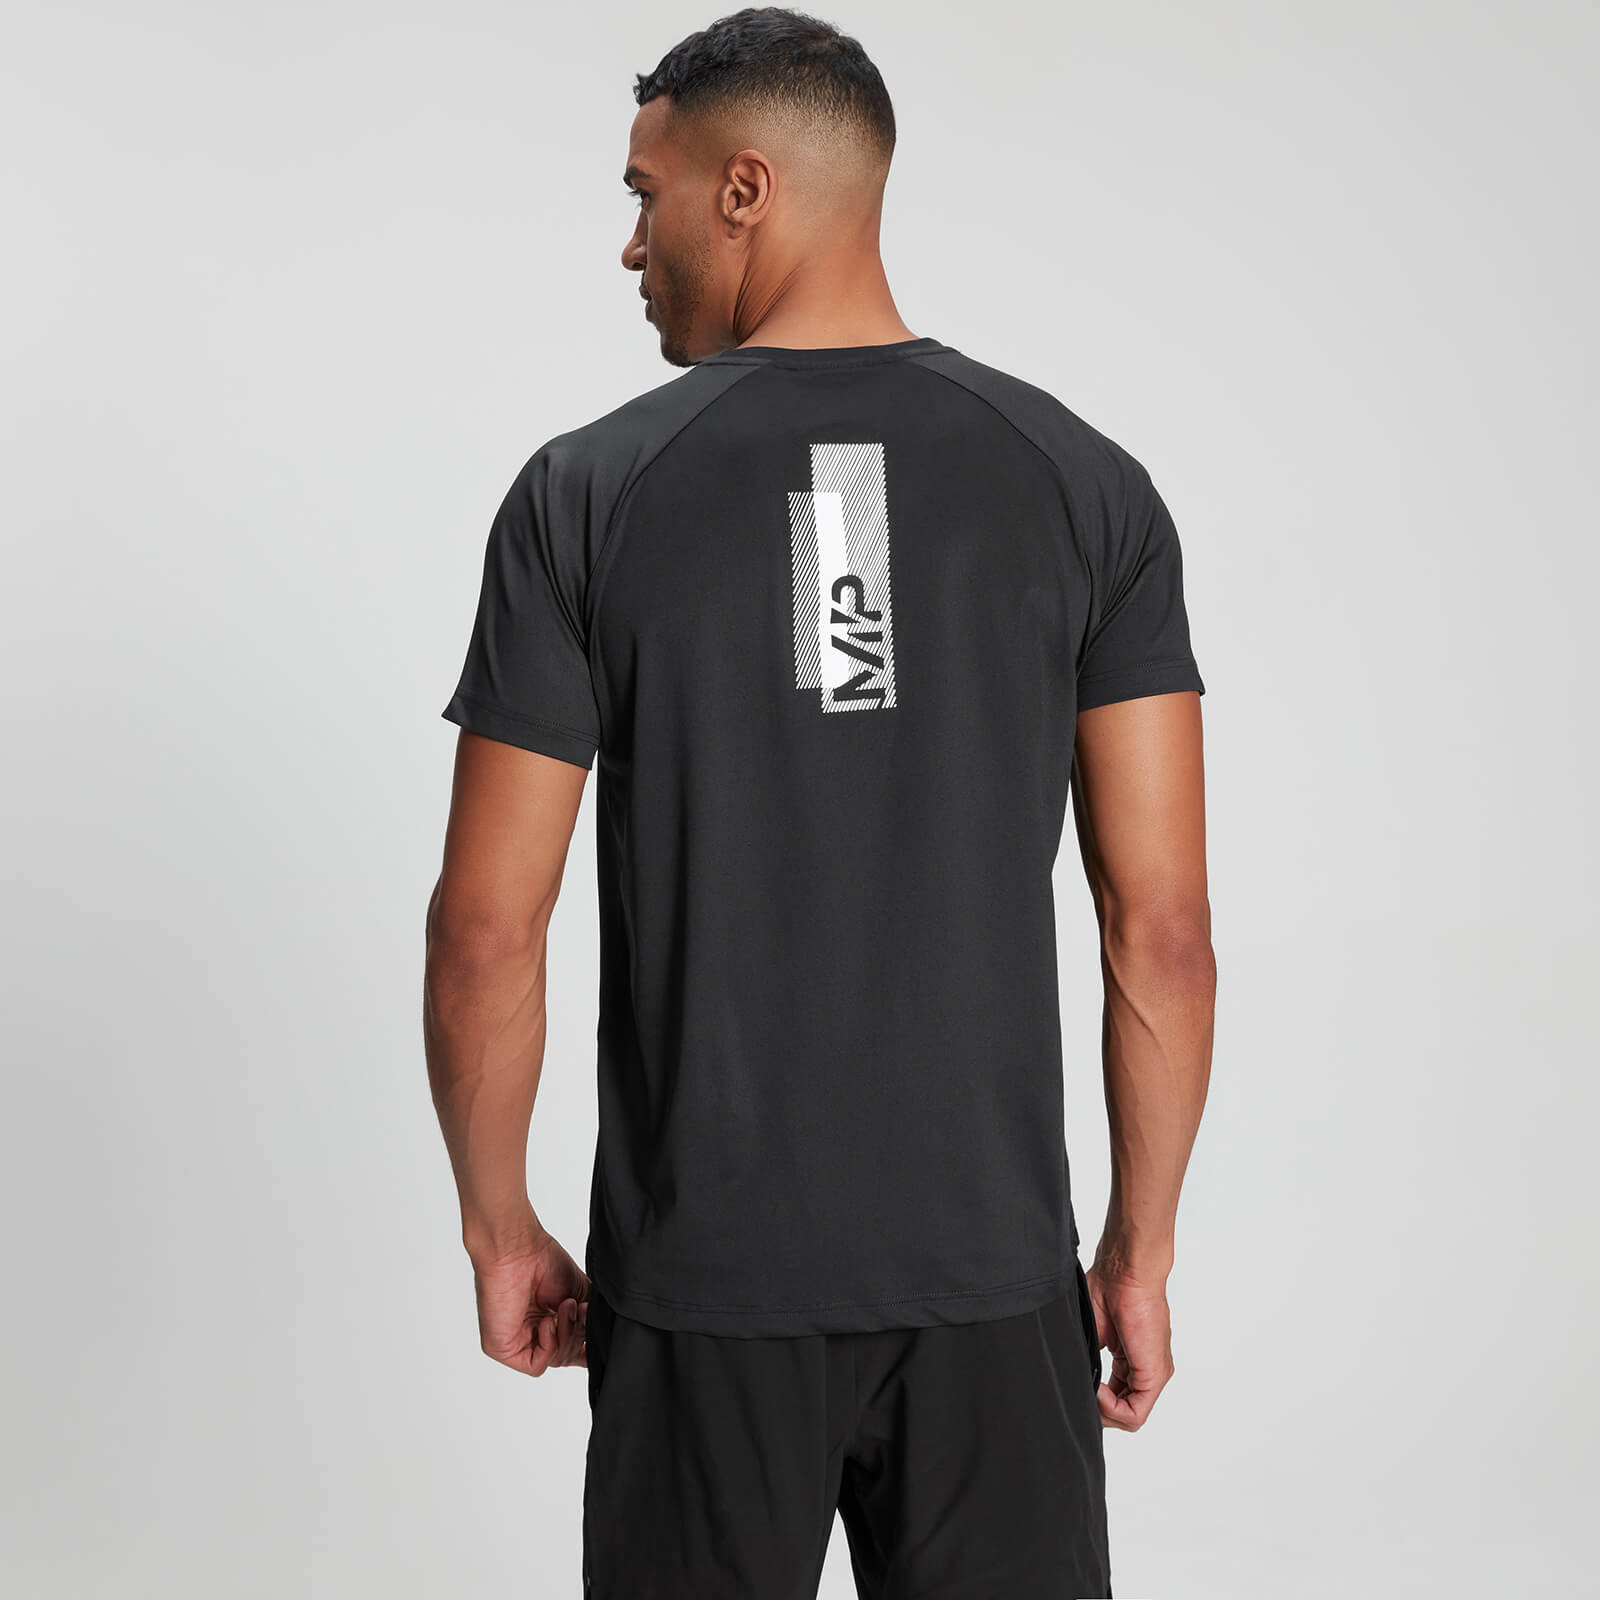 Myprotein Camiseta de manga corta de entrenamiento estampada para hombre - Negro - S